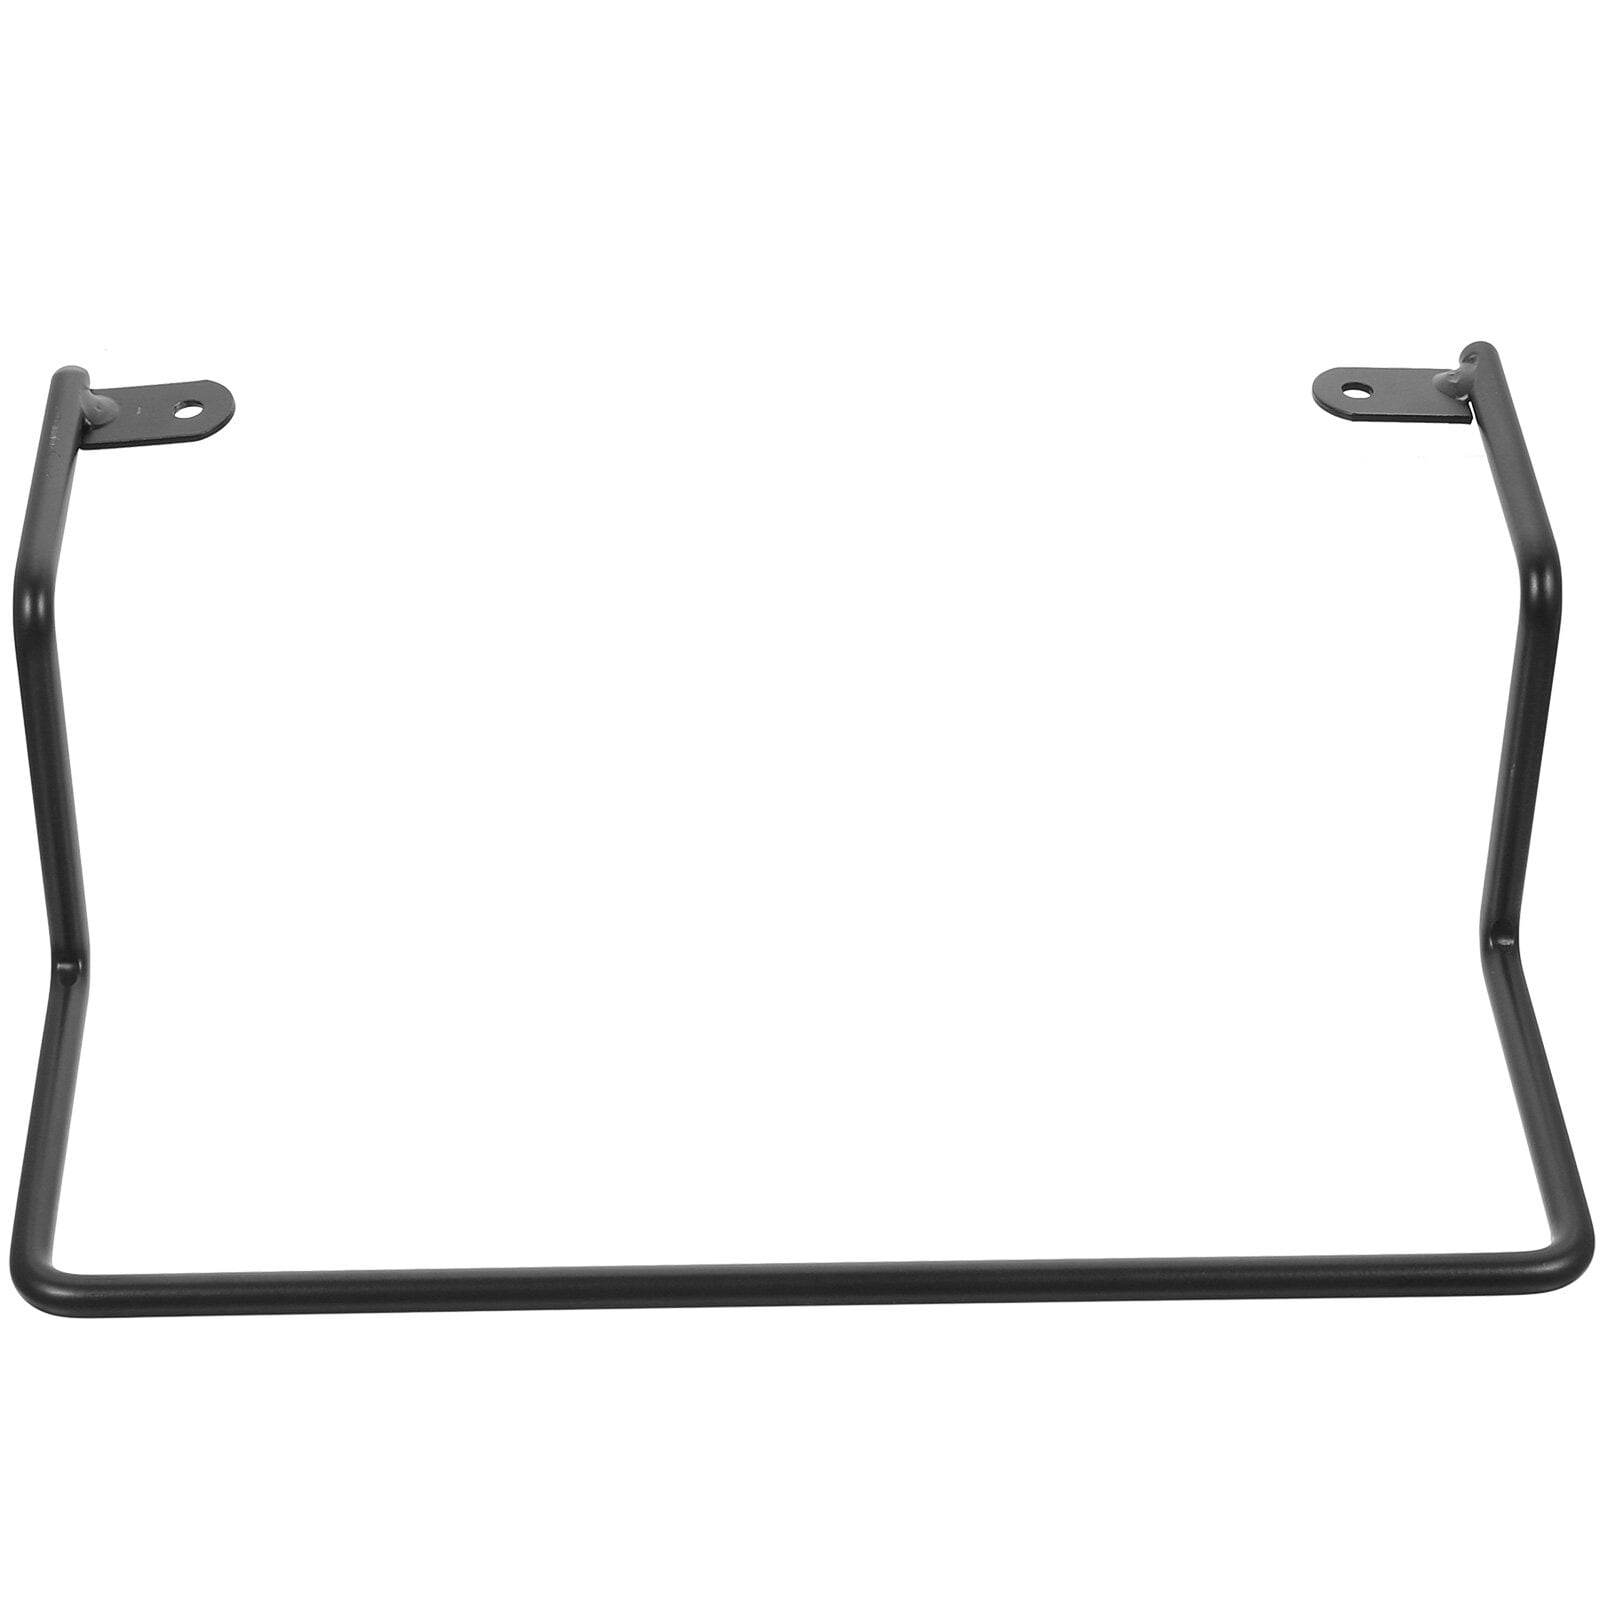 Mattress Slide Stopper, DELLAN Non-Slip Mattress Gripper Retainer Bar,  Mattress Holder for Bed Frame to Prevent Sliding (2 Pack)